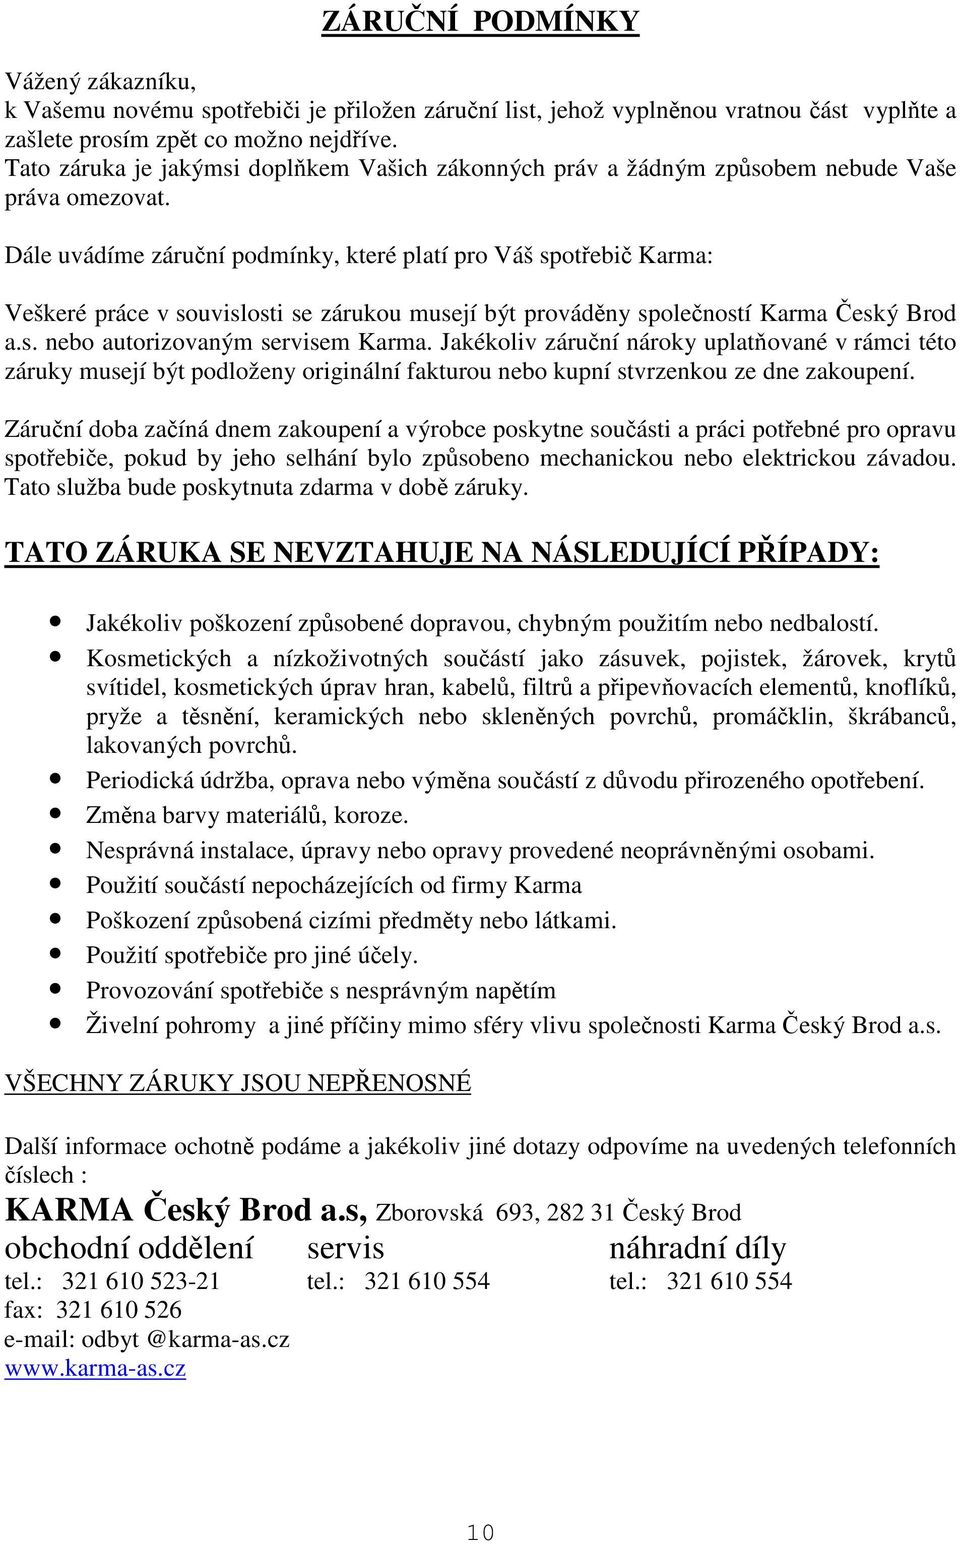 Dále uvádíme záruní podmínky, které platí pro Váš spotebi Karma: Veškeré práce v souvislosti se zárukou musejí být provádny spoleností Karma eský Brod a.s. nebo autorizovaným servisem Karma.